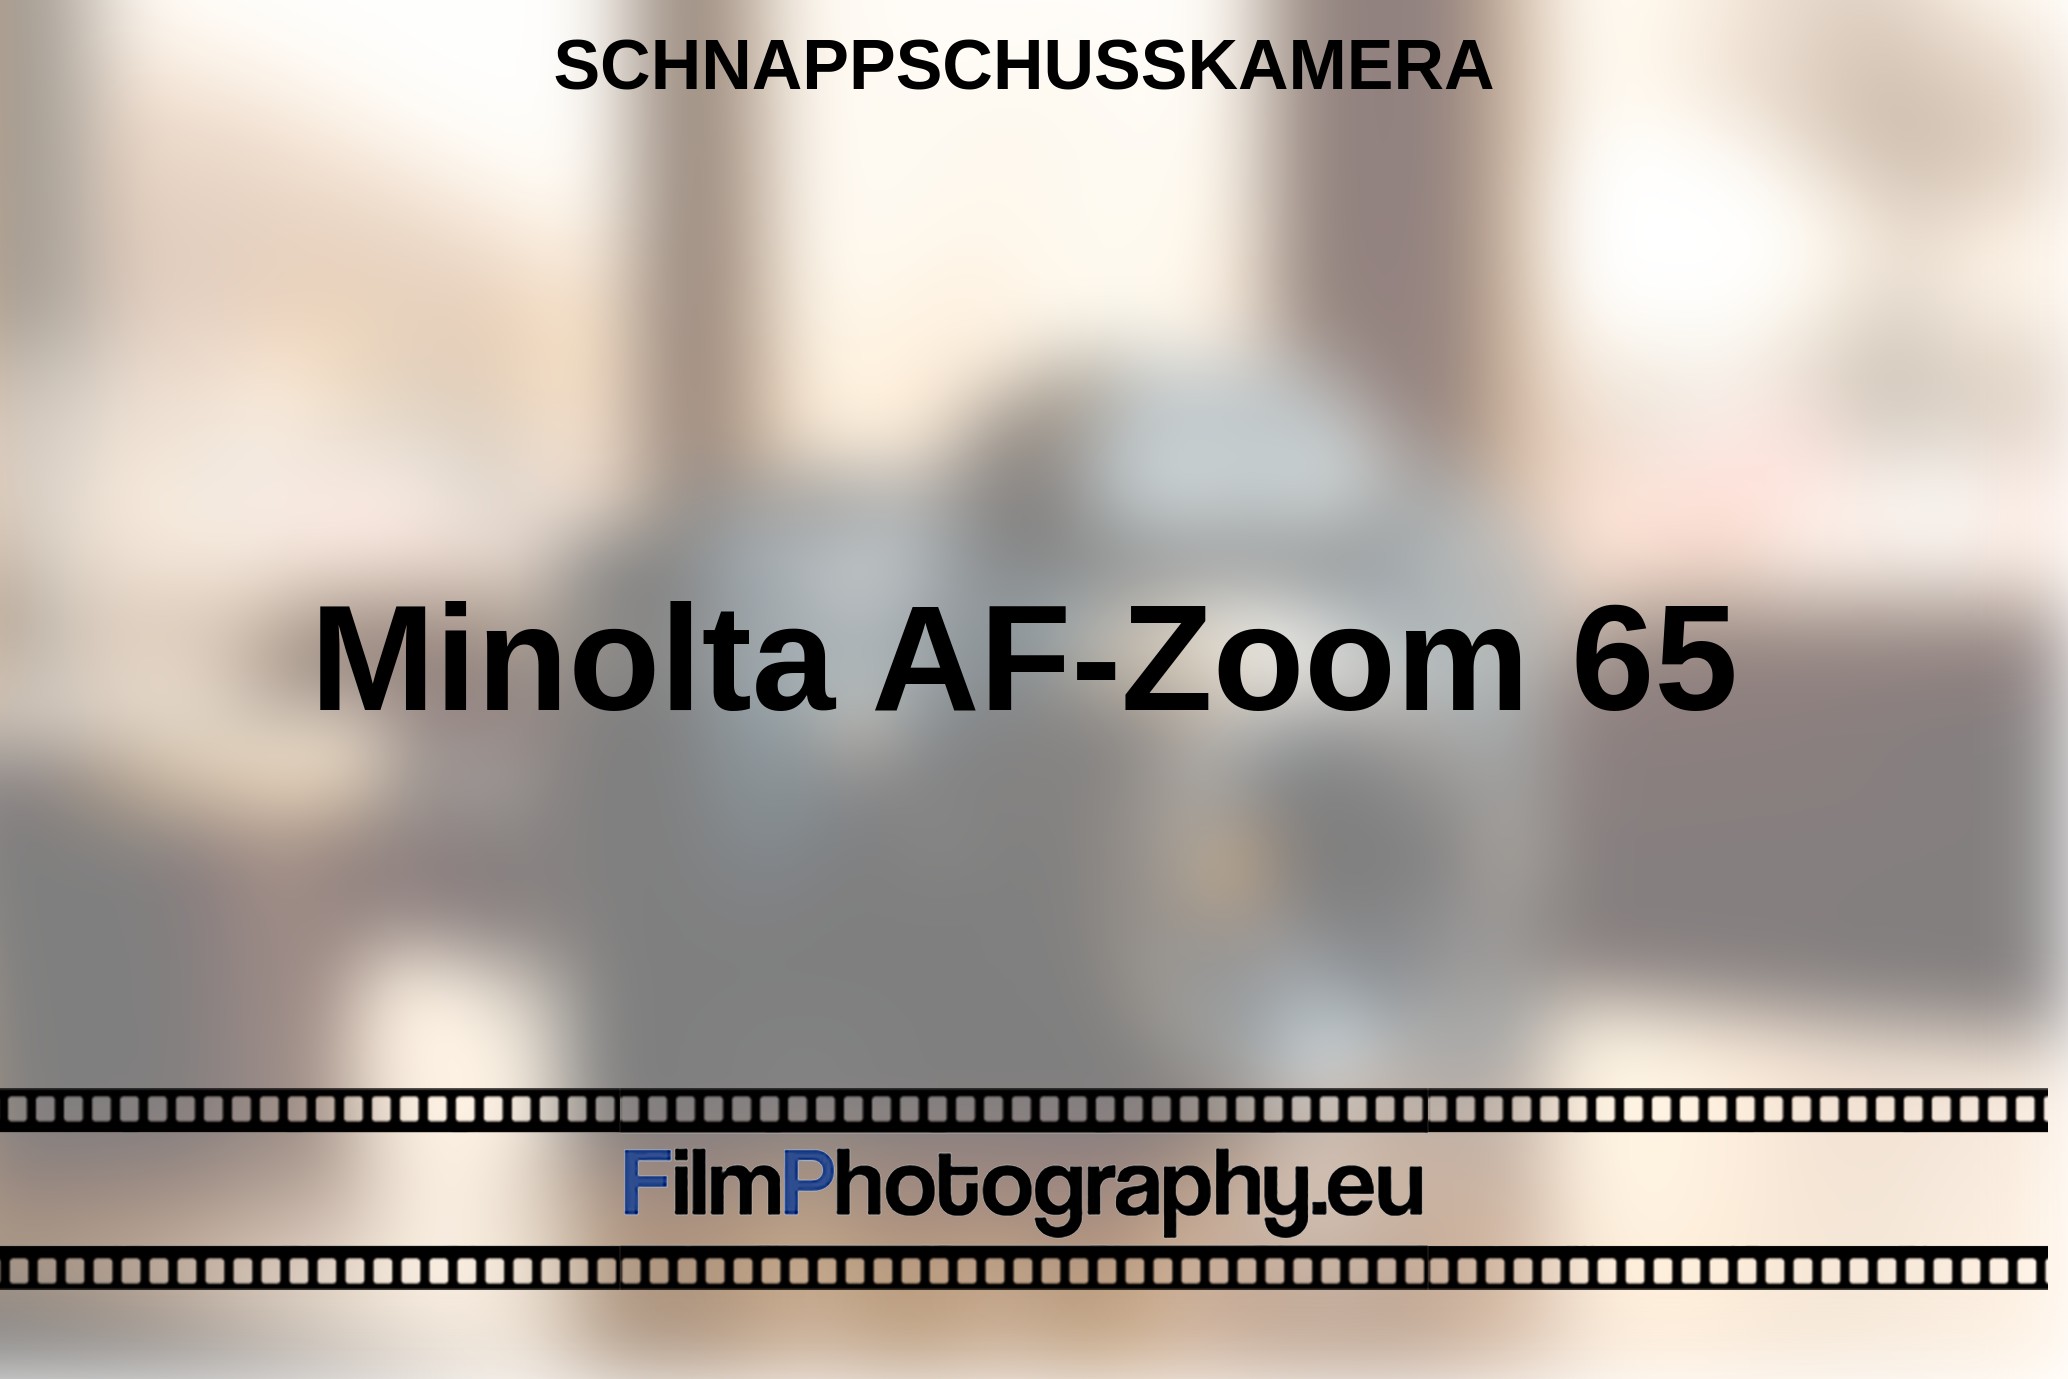 Minolta-AF-Zoom-65-Schnappschusskamera-bnv.jpg